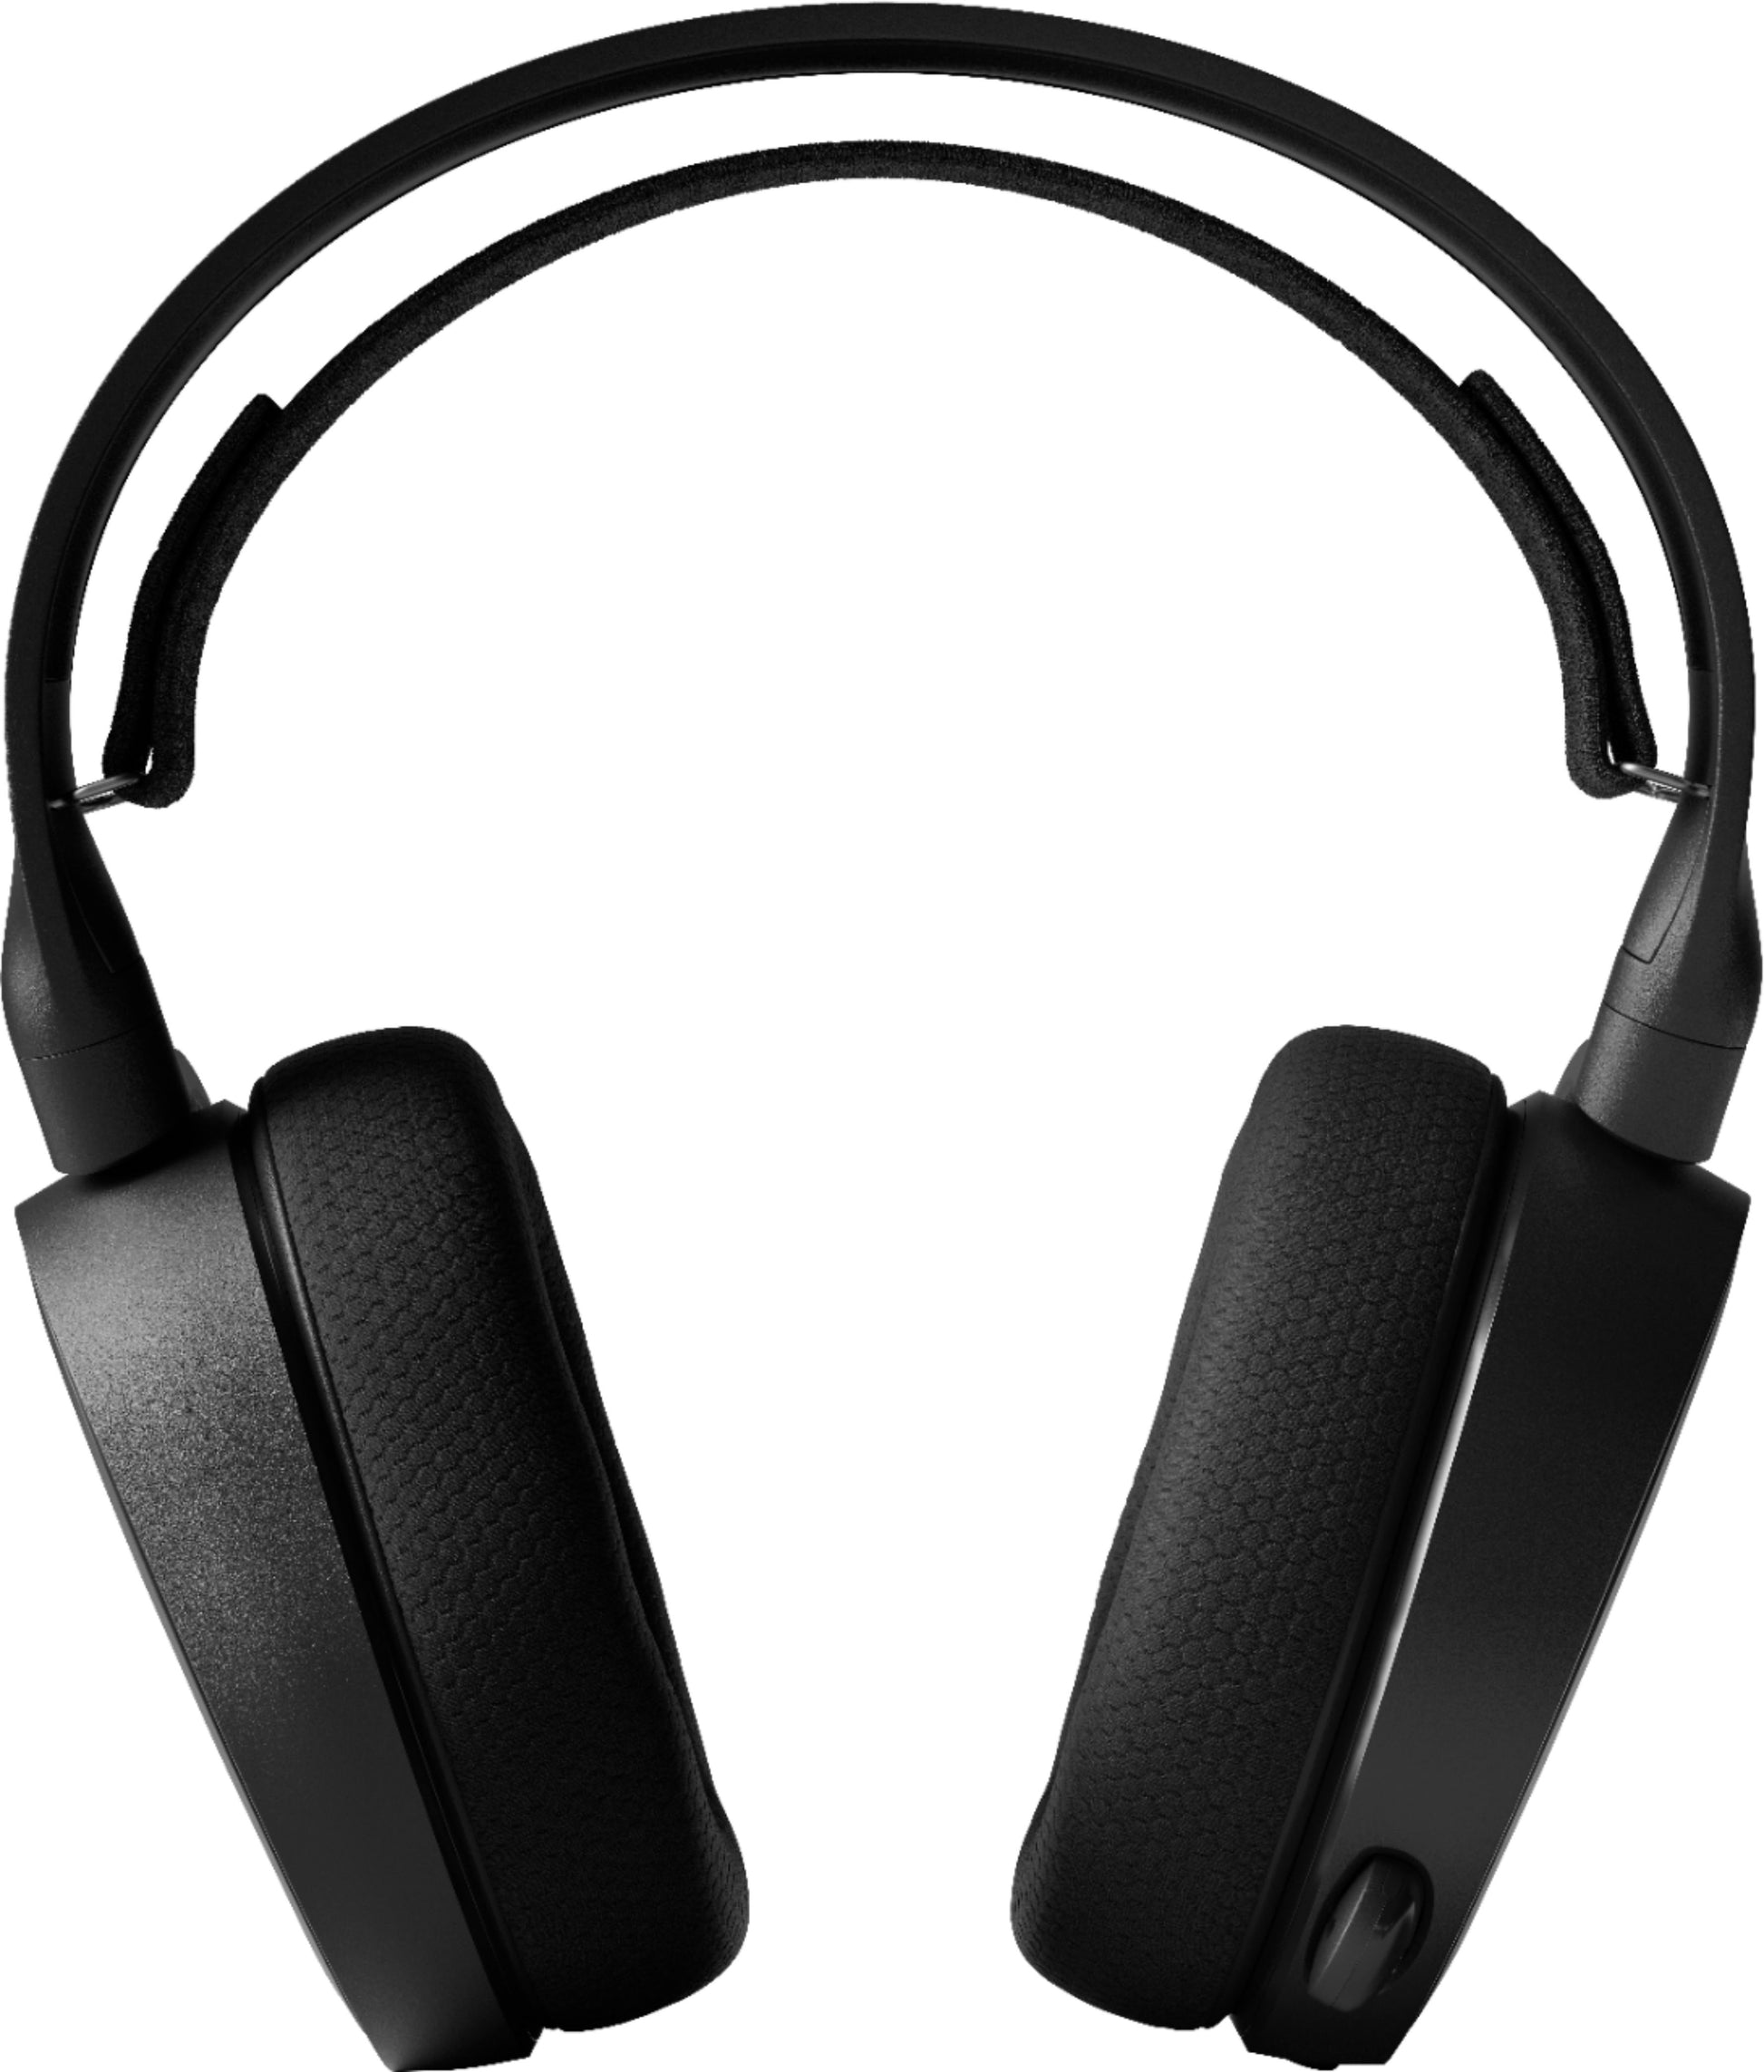 SteelSeries Arctis 3 Black Wired Gaming Headset - Rekes Sales